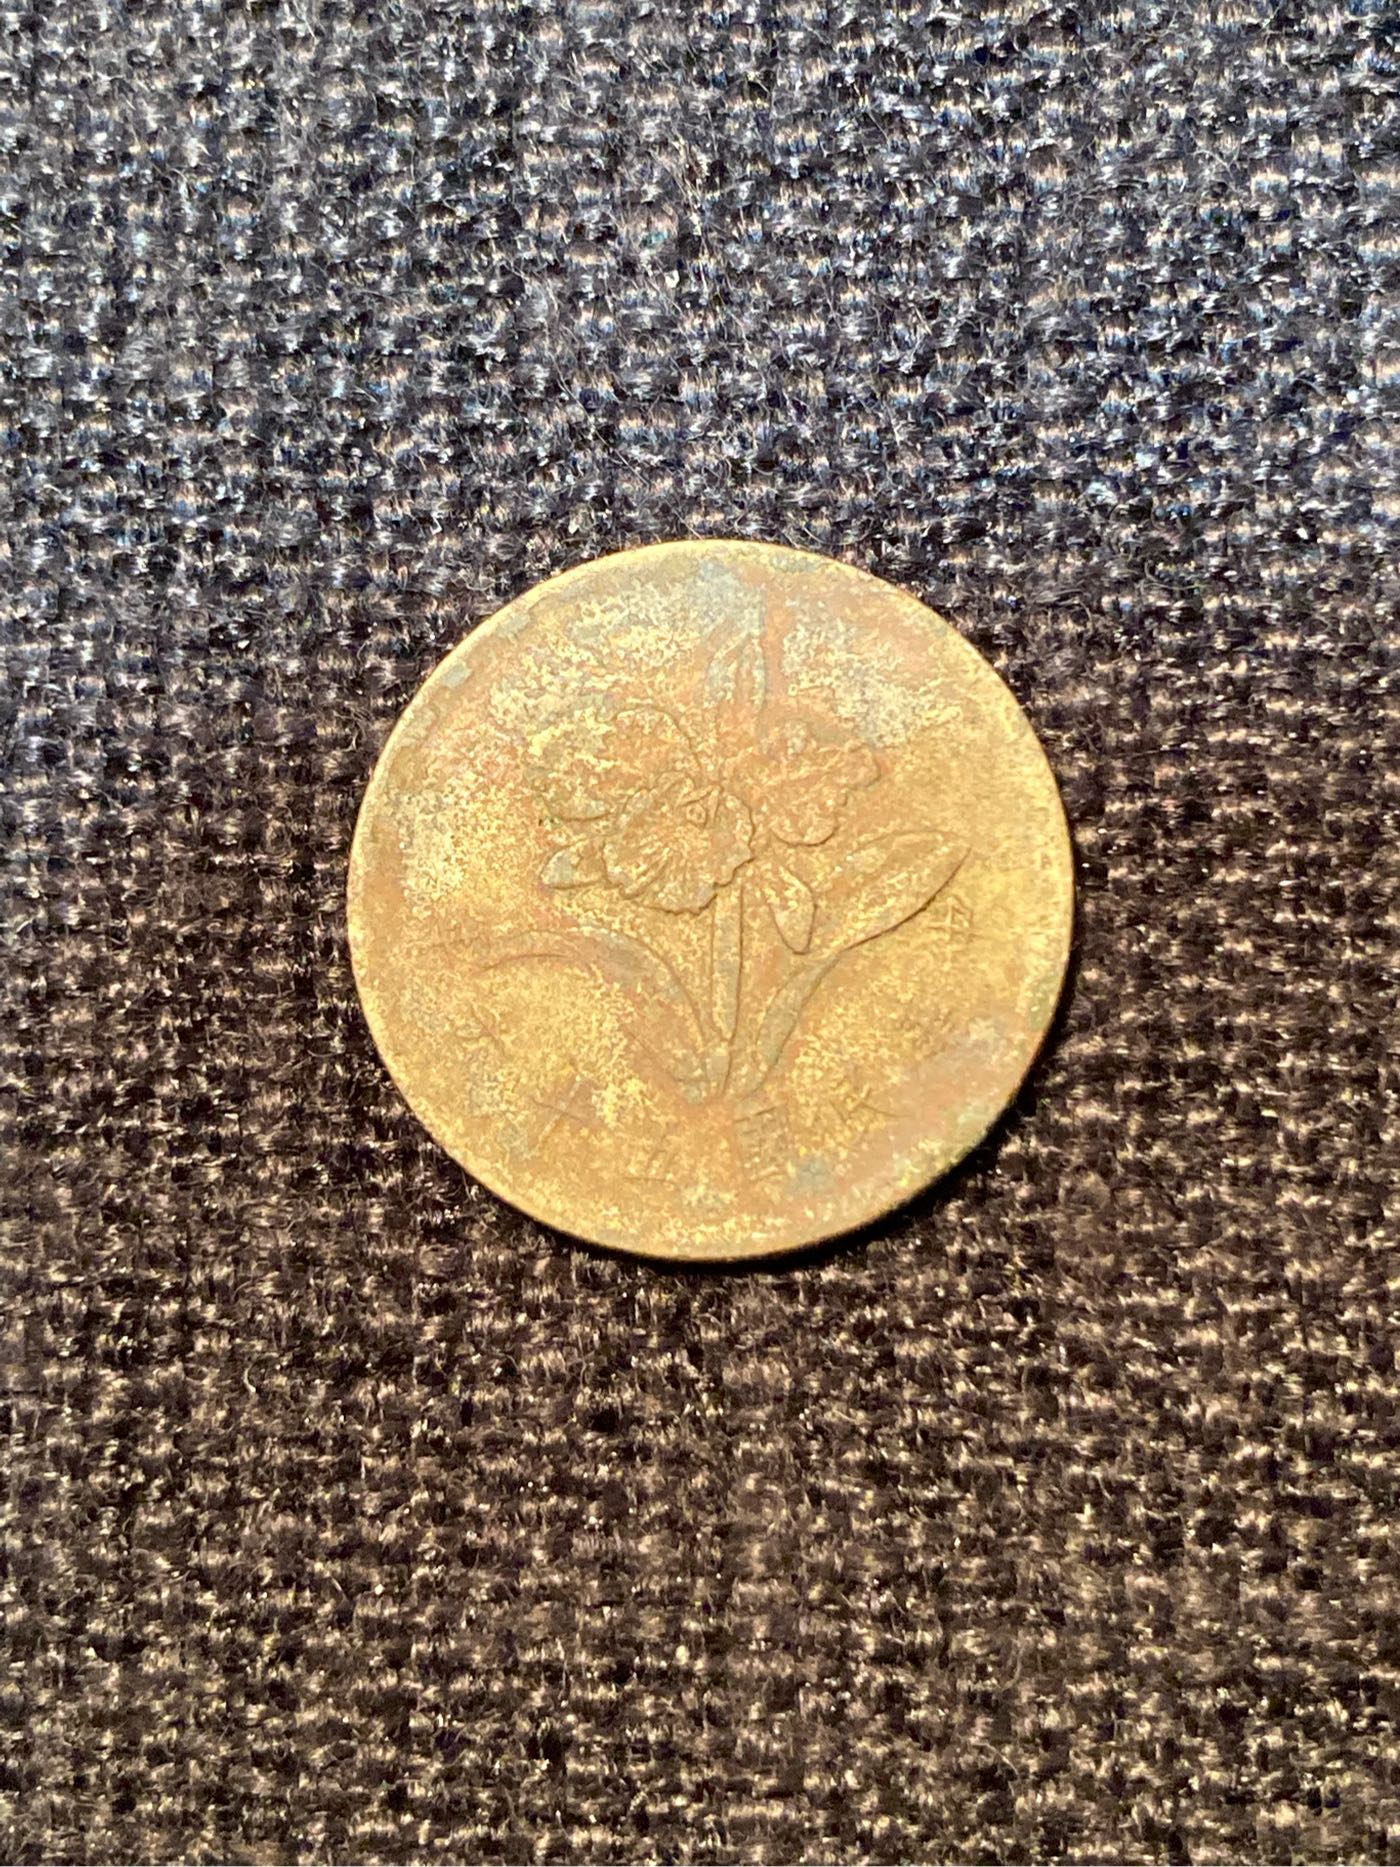 老硬幣 中華民國56年 伍角 直徑22.7mm